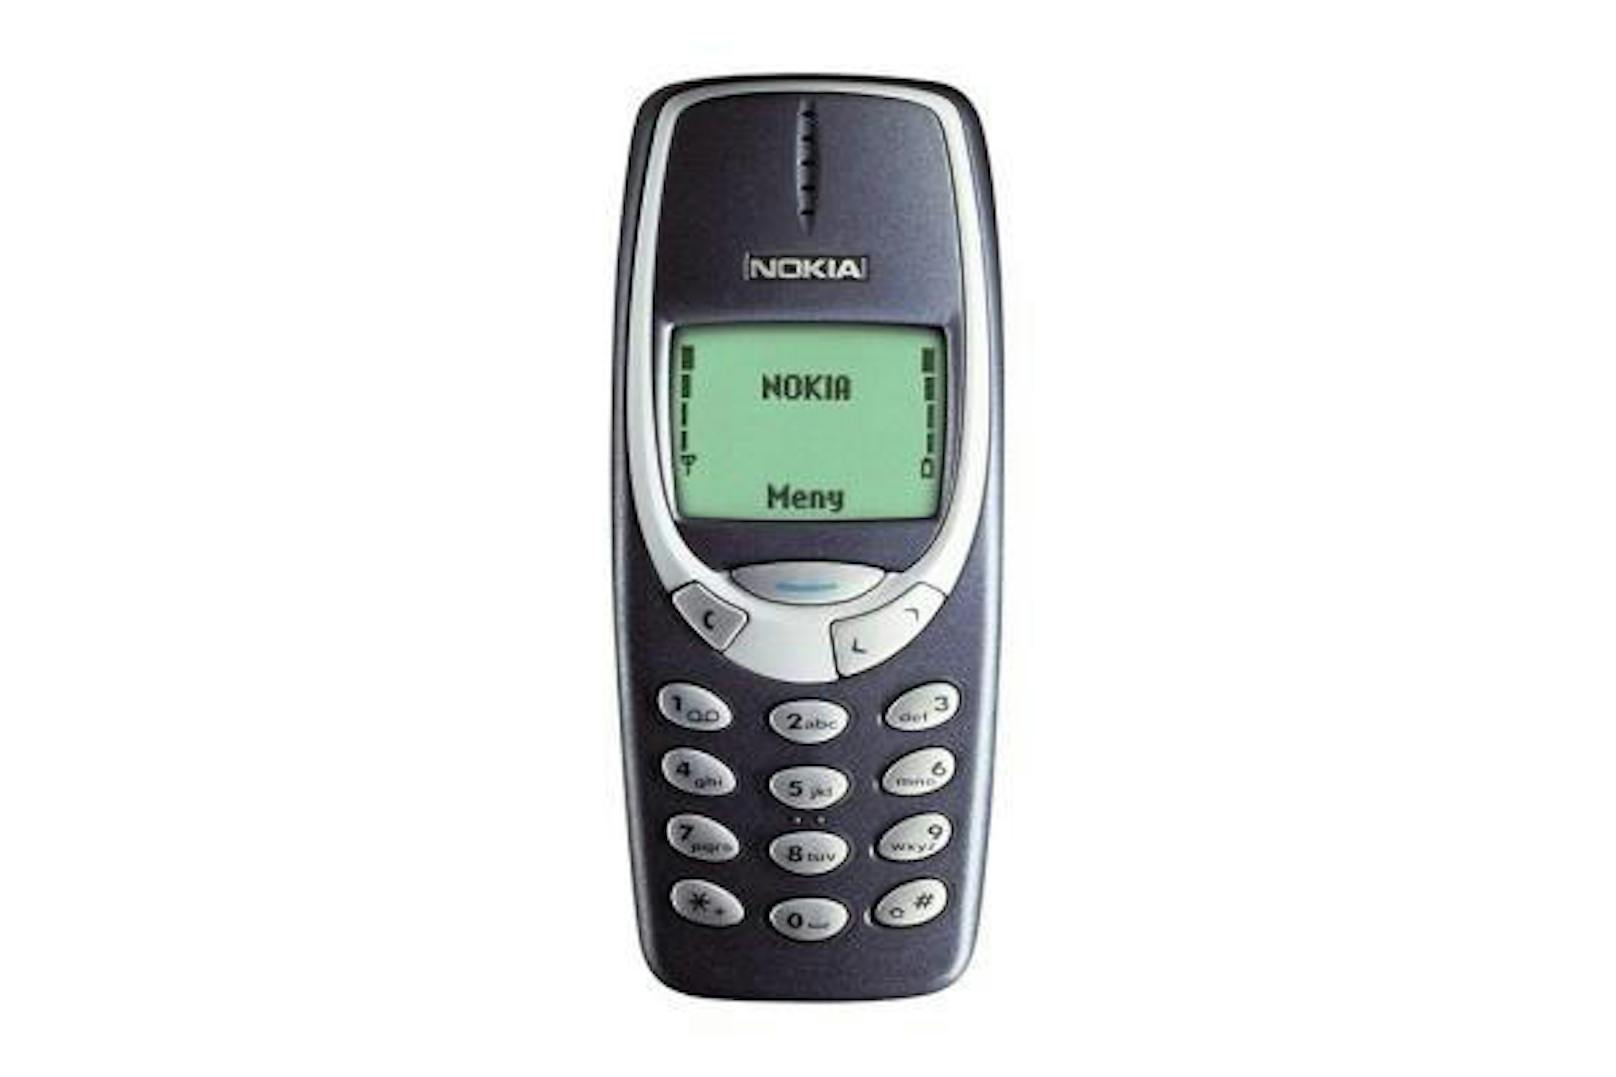 Nokia 3310: Ein weiterer Kassenschlager des Herstellers. Das Nokia 3310 verkaufte sich mehr als 125 Millionen Mal. Im Jahr 2000 kam es auf den Markt.